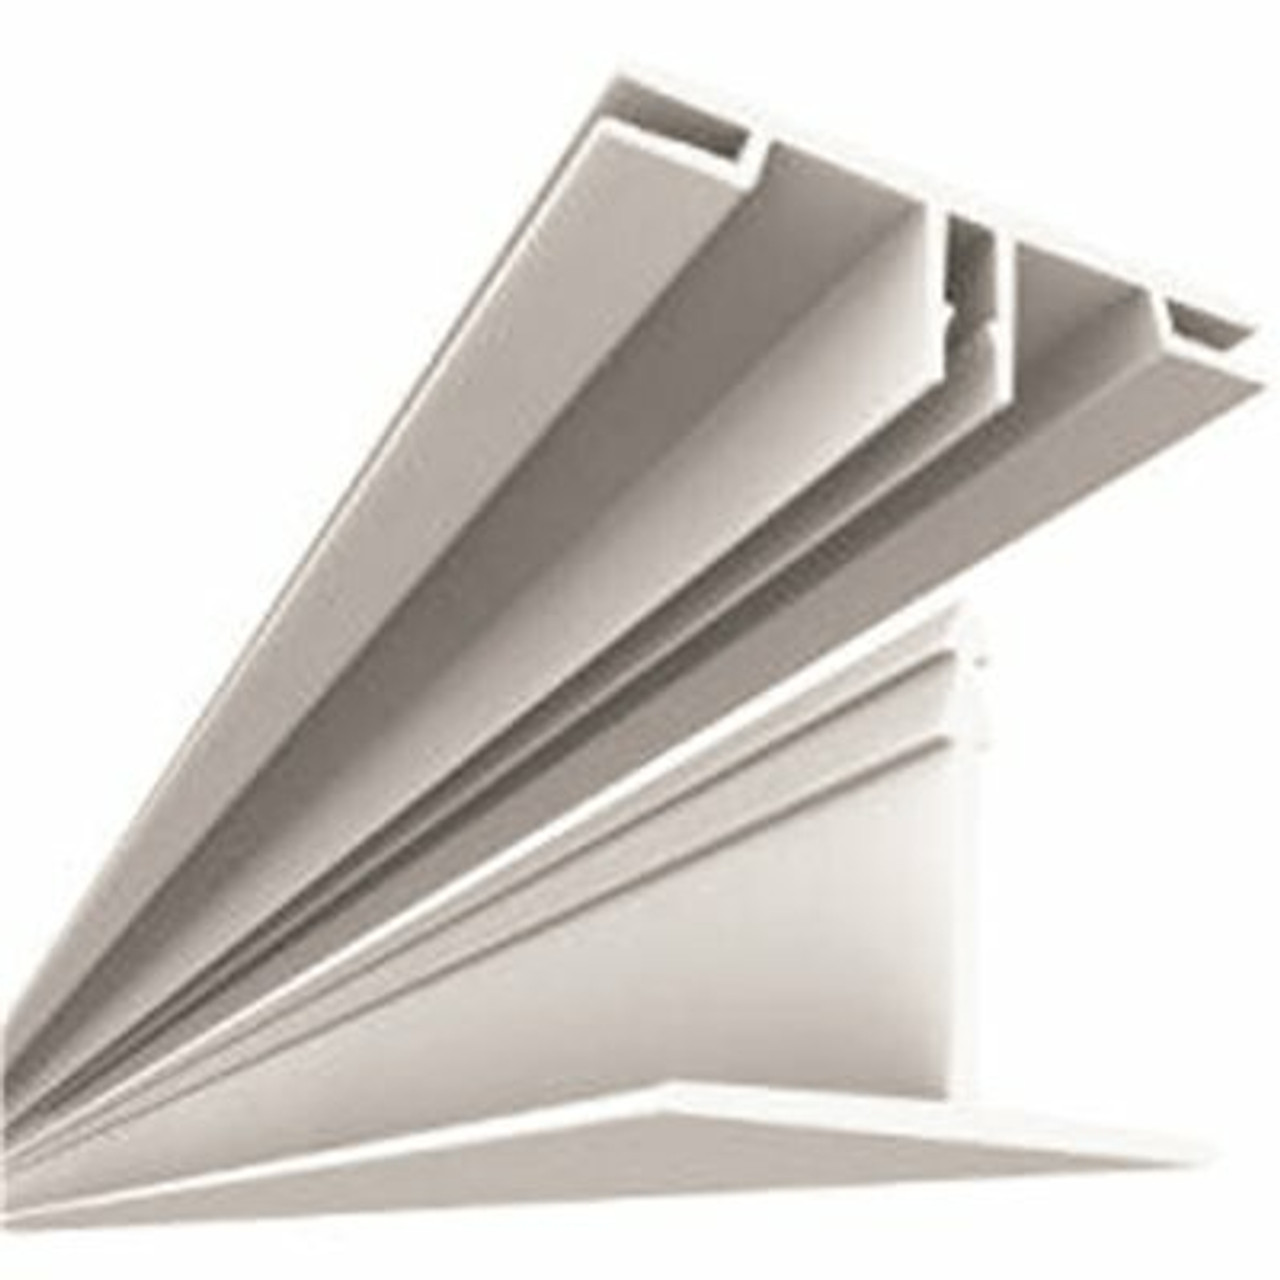 Ceilingmax 100 Sq. Ft. Ceiling Grid Kit White